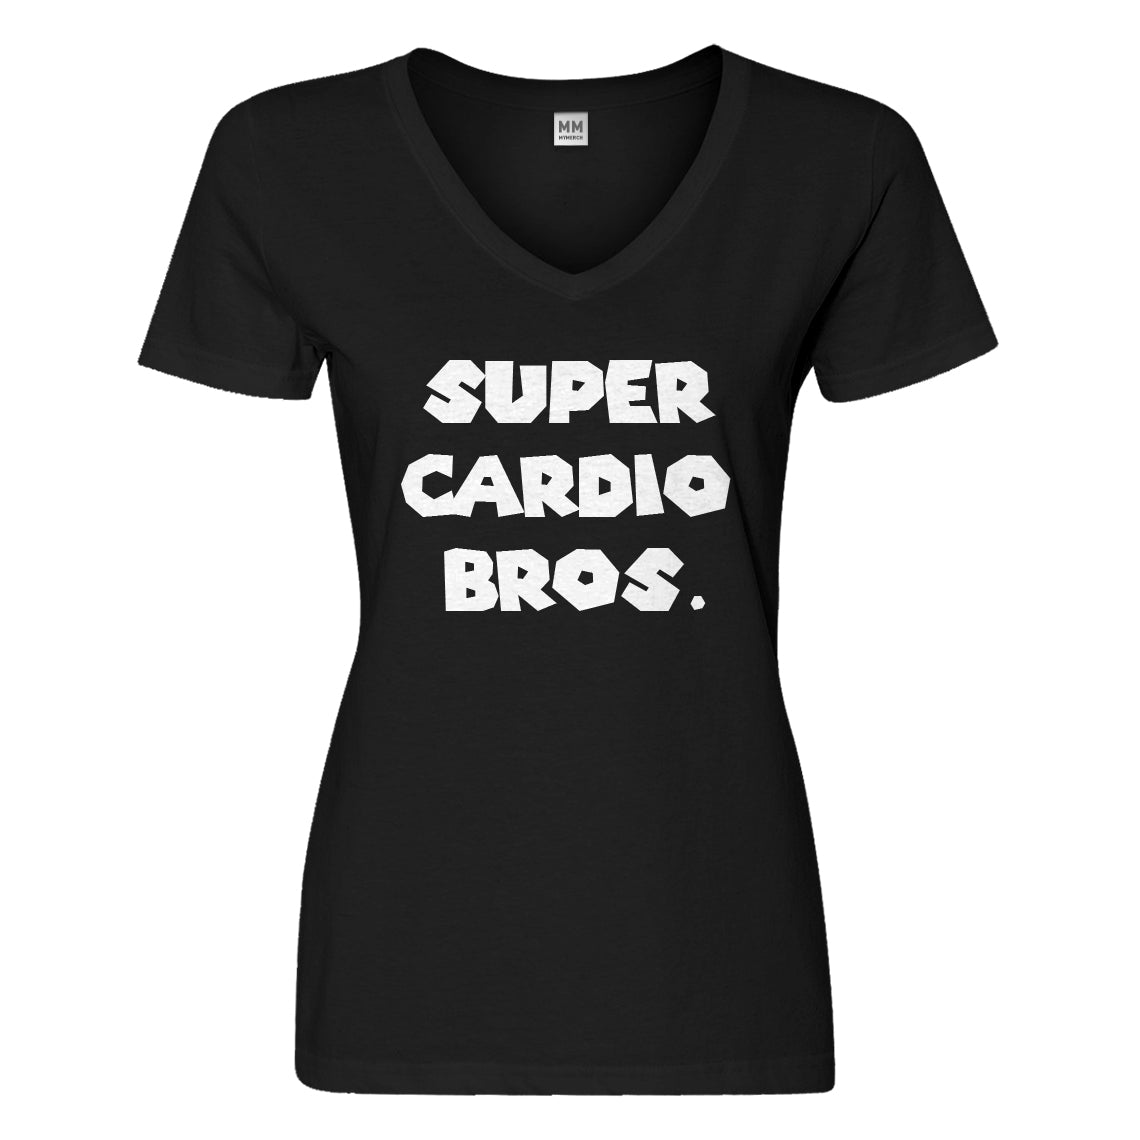 Womens Super Cardio Bros. Vneck T-shirt